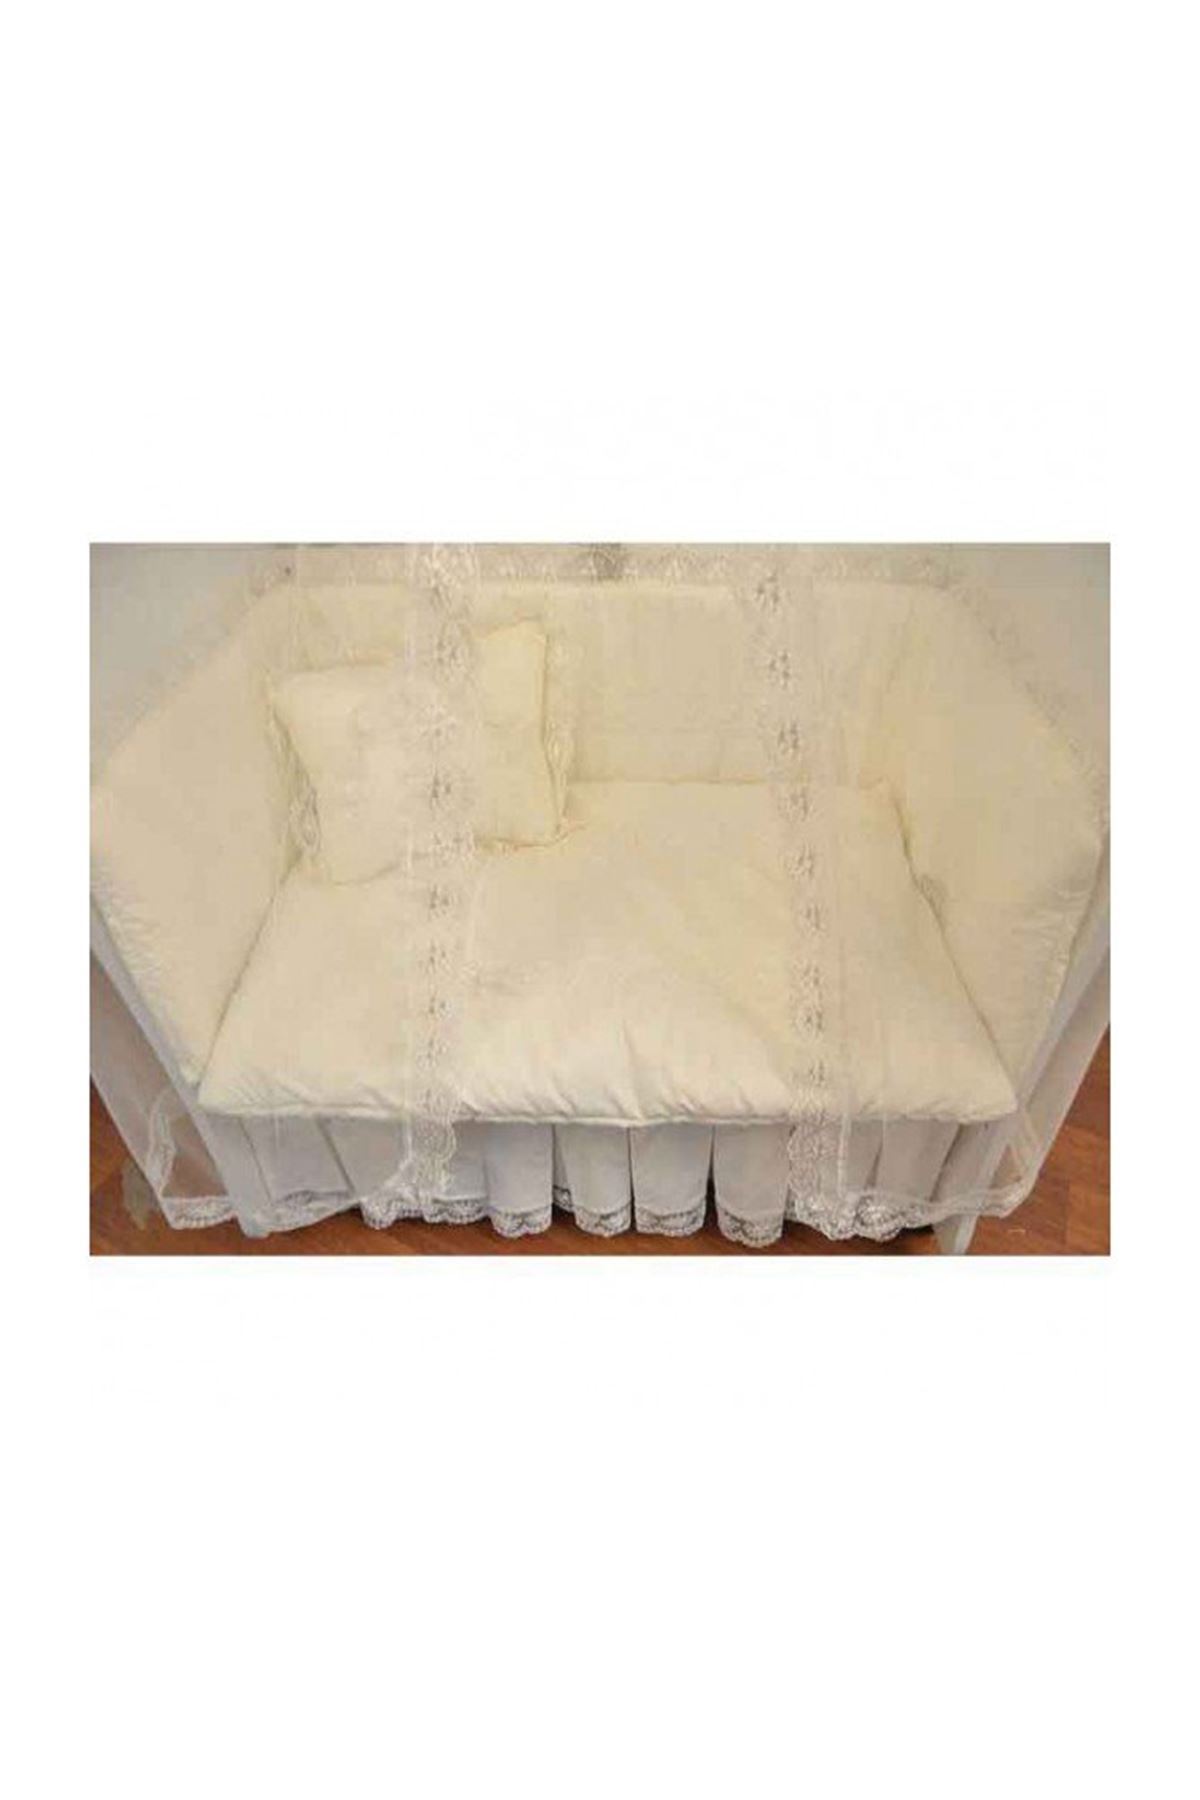 طقم قماش لسرير مقاس90×50كريم بضانتيل فرانسي ممتاز